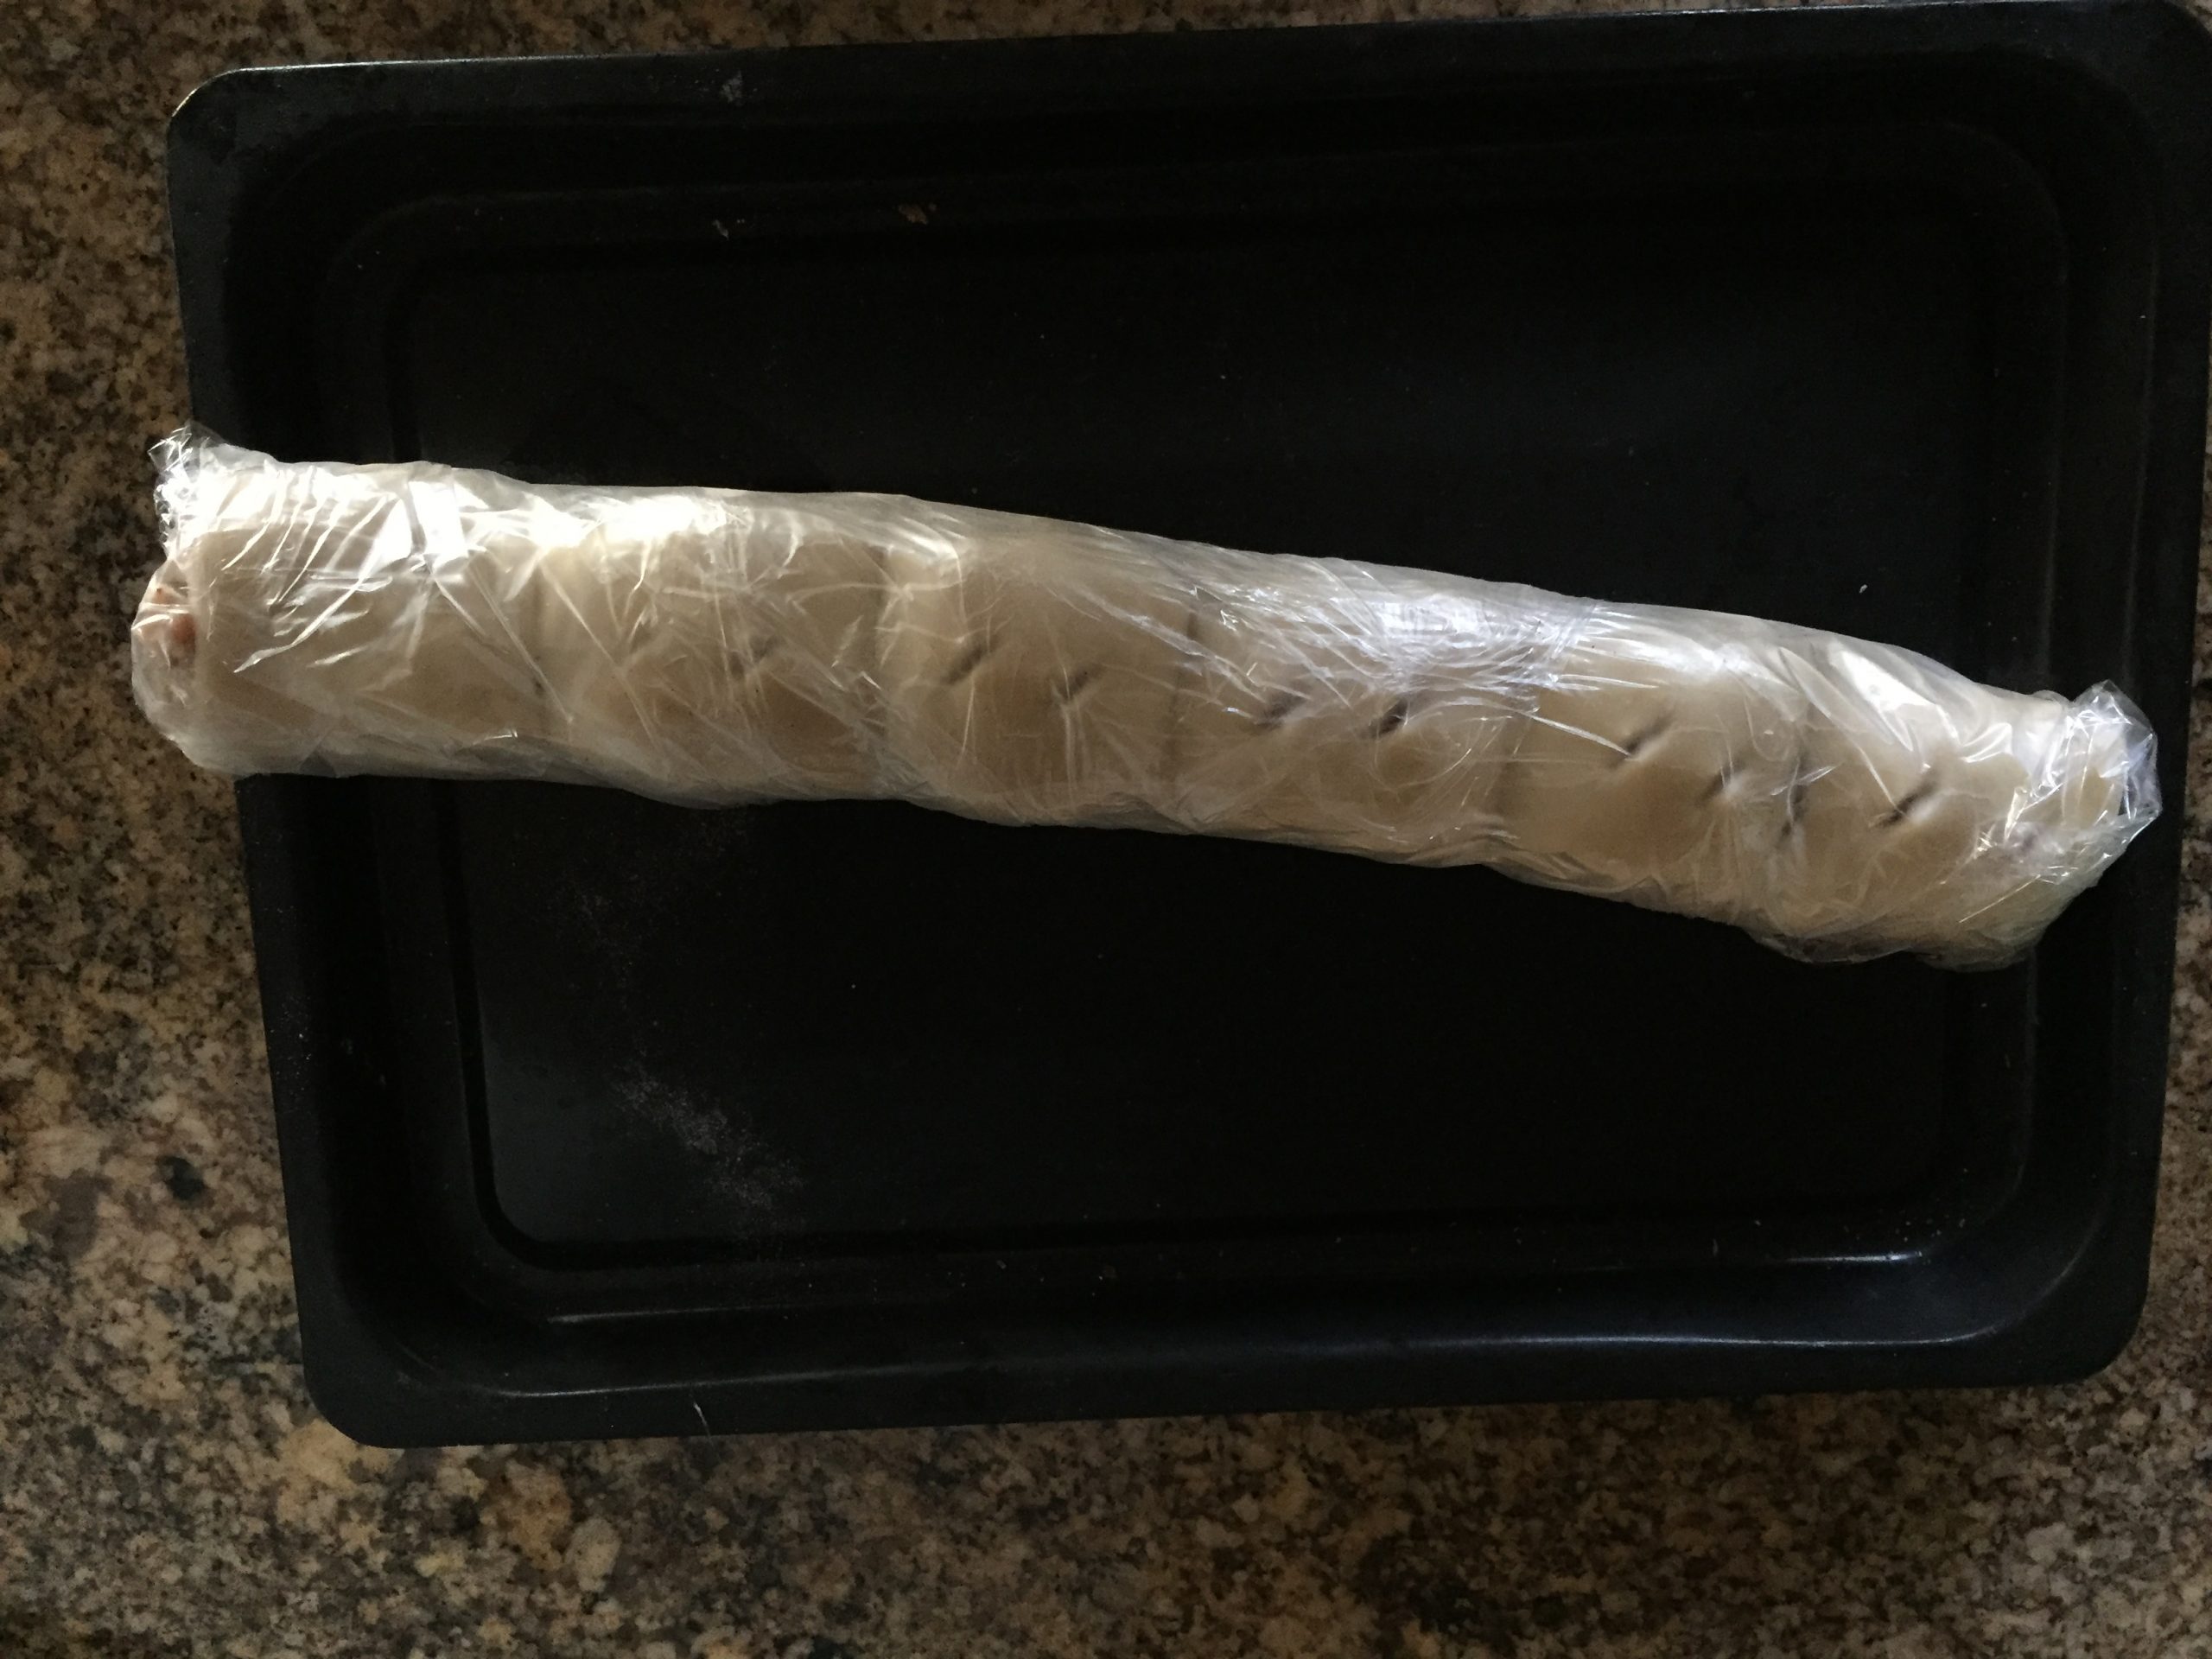 Frozen sausage rolls